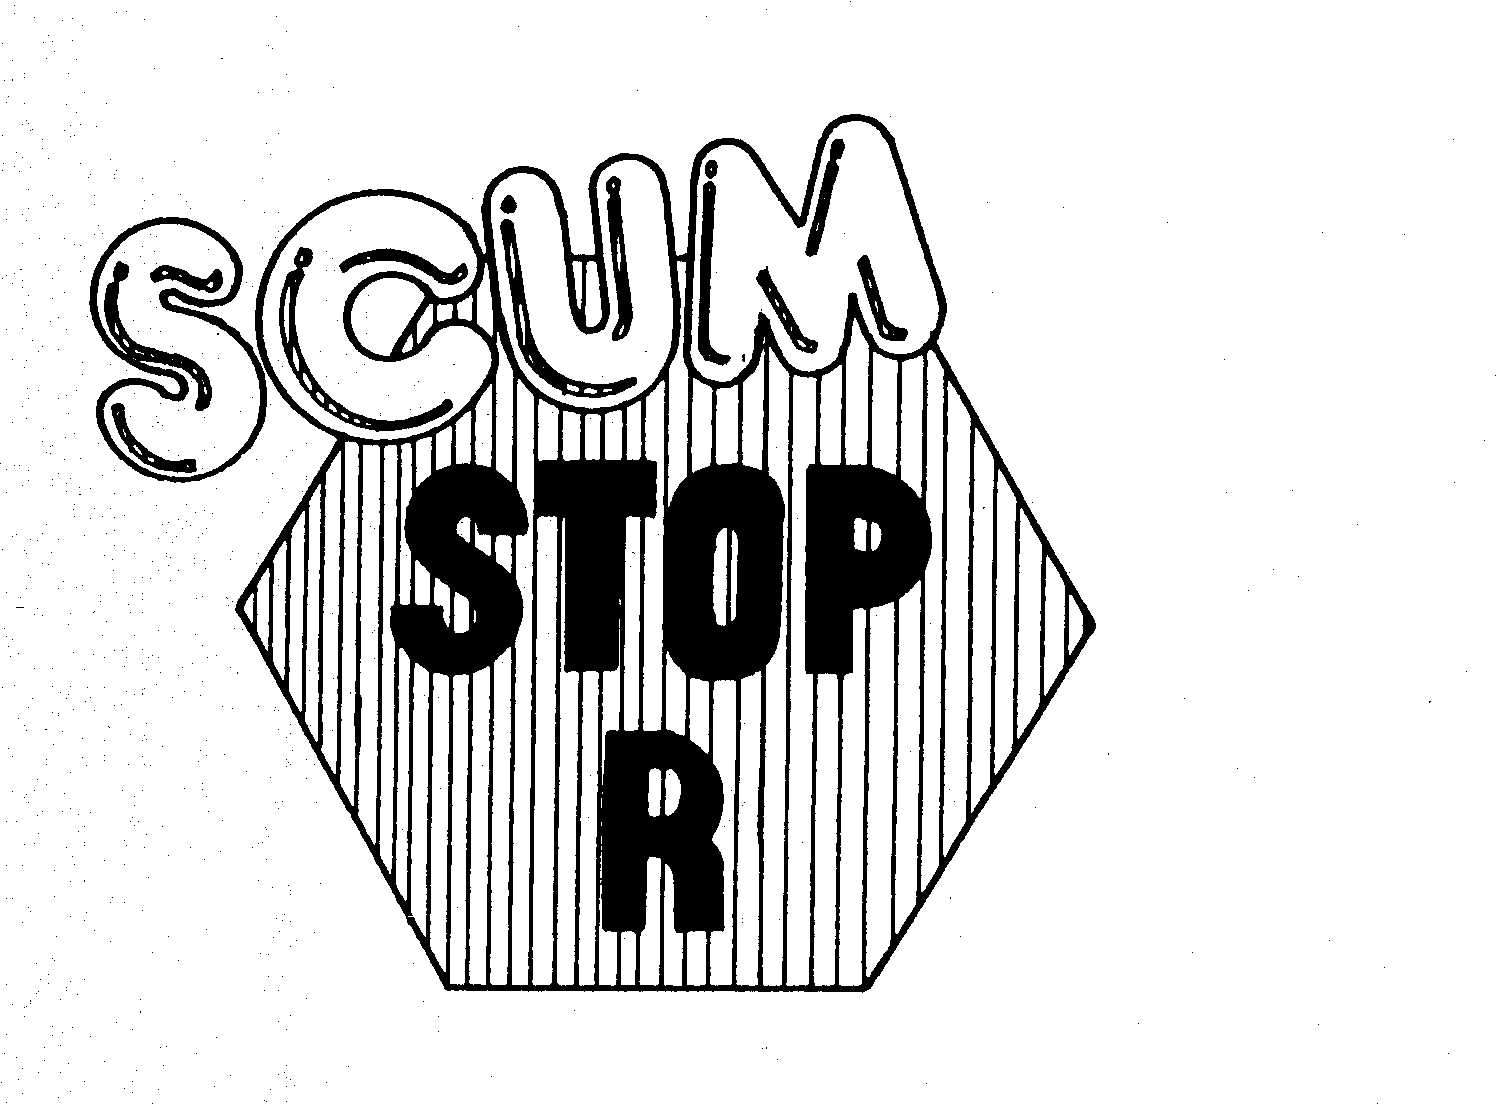  SCUM STOP R